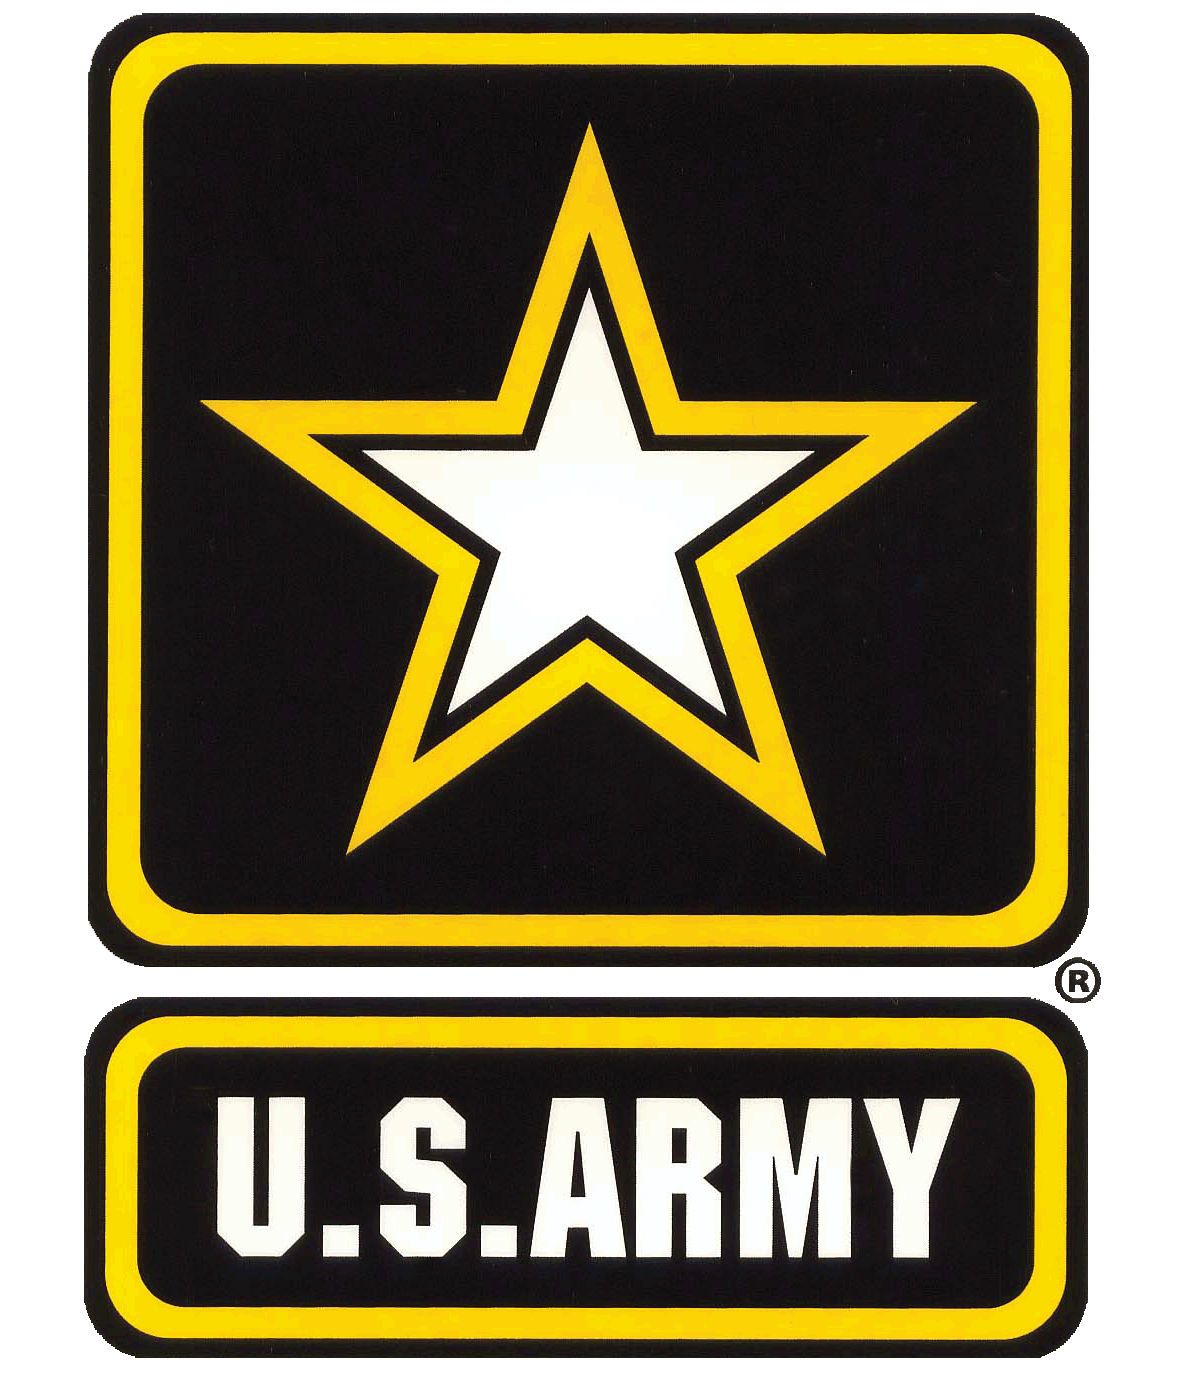 Army Logo - army-logo-150 - AFC Transportation